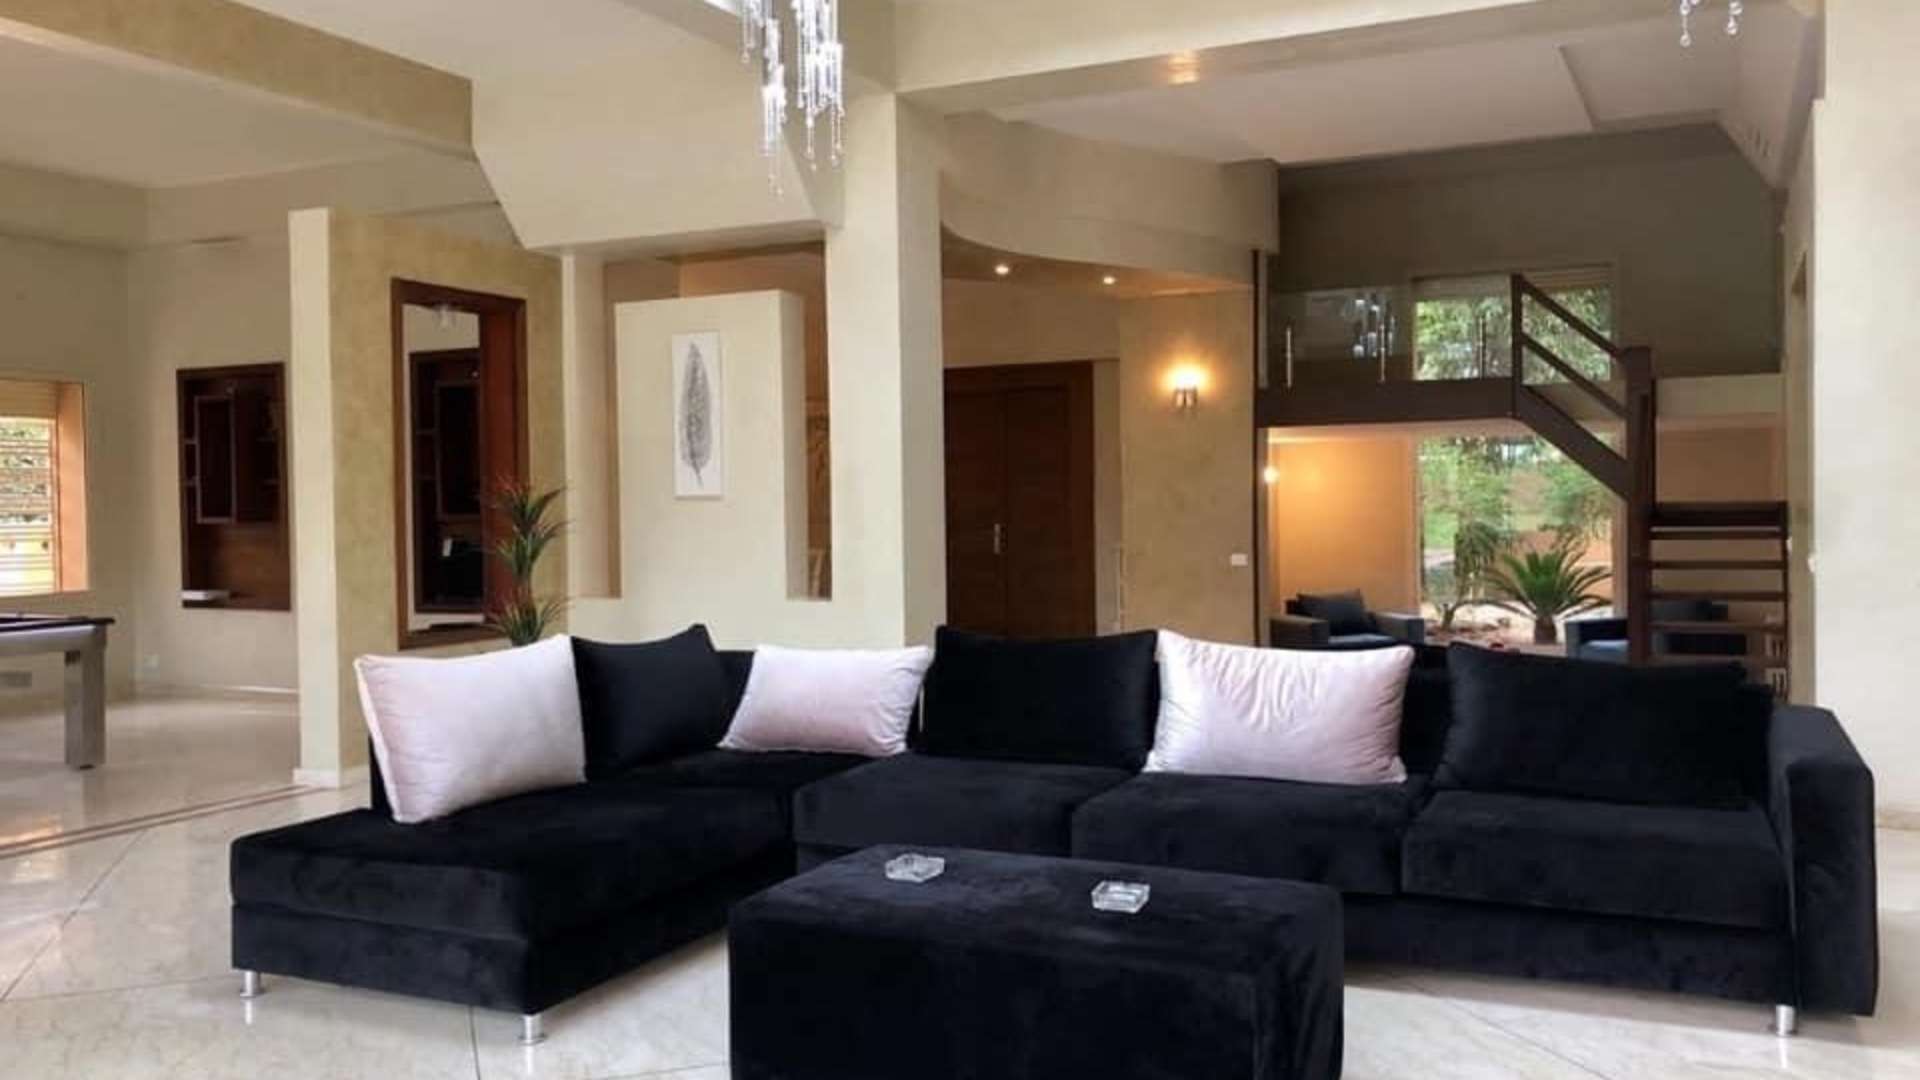 Location de vacances,Villa,Villa de charme de 5 suites idéalement située dans le quartier de l’Agdal à Marrakech ,Marrakech,Agdal